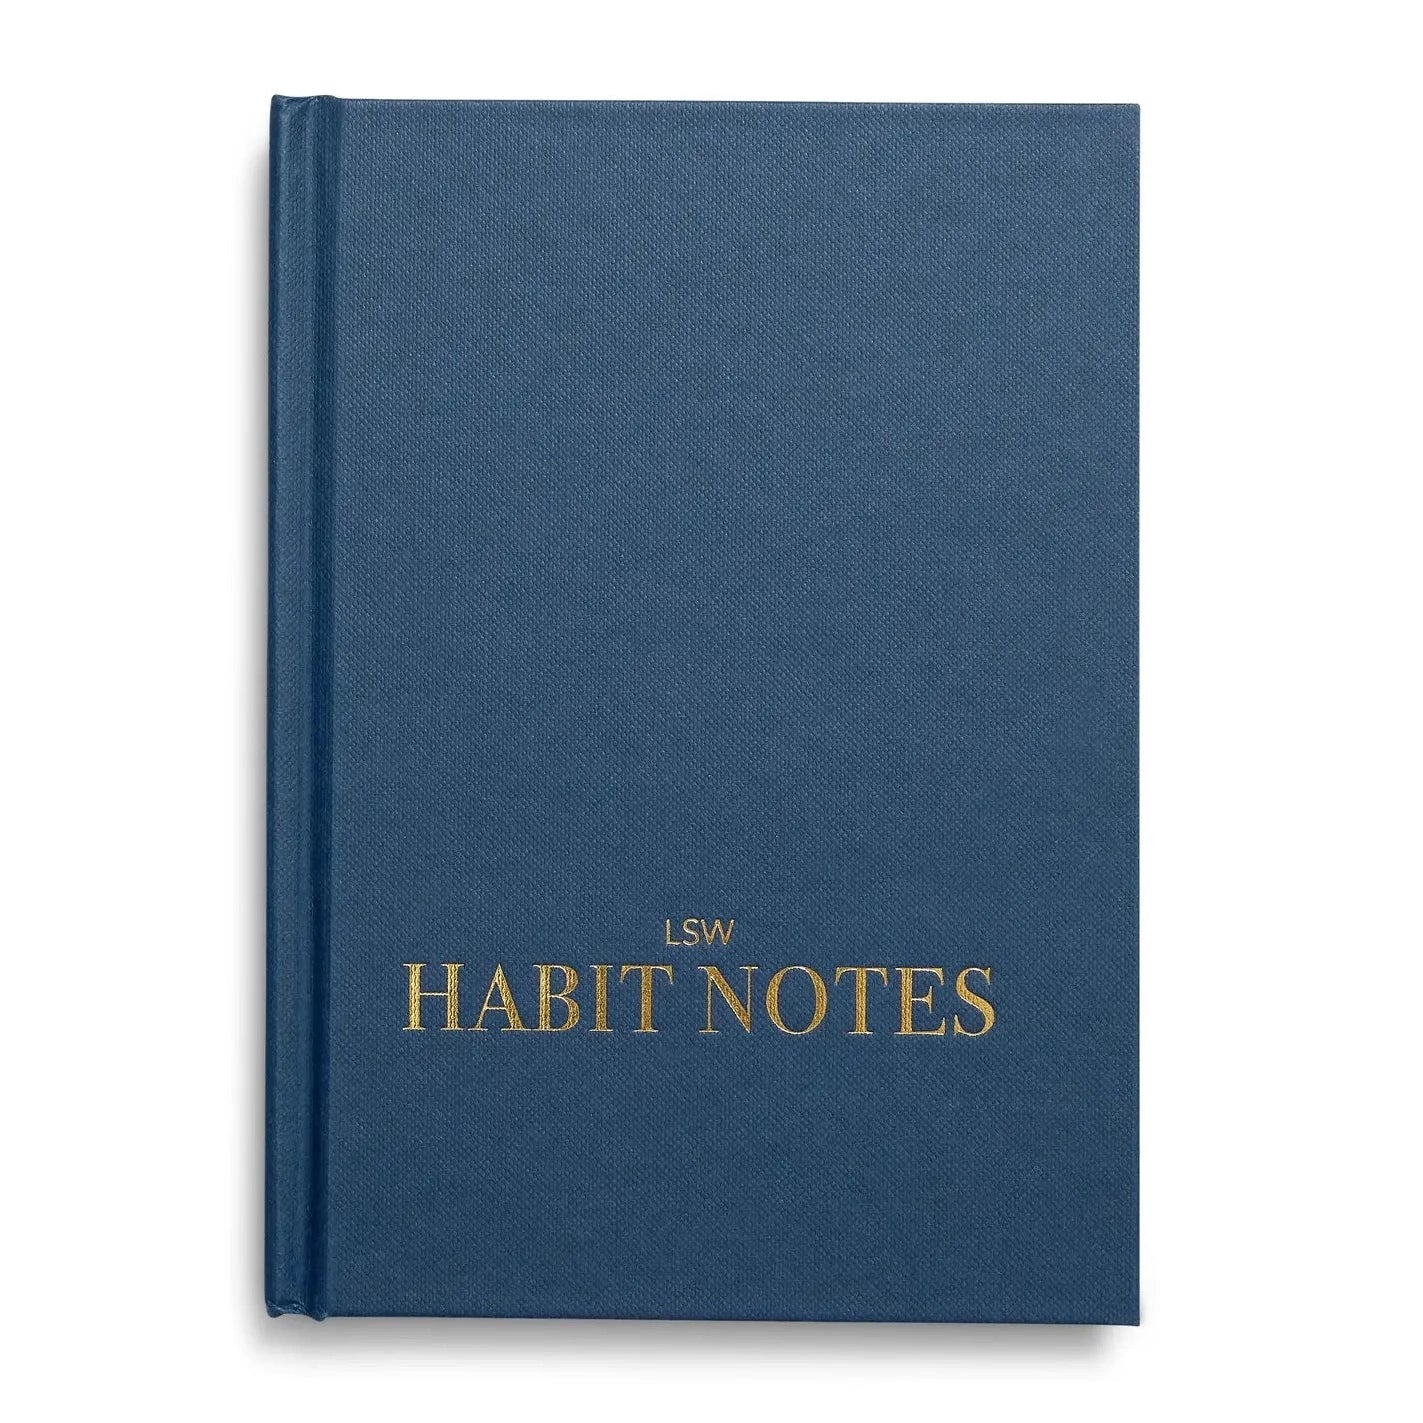 Habit Journal